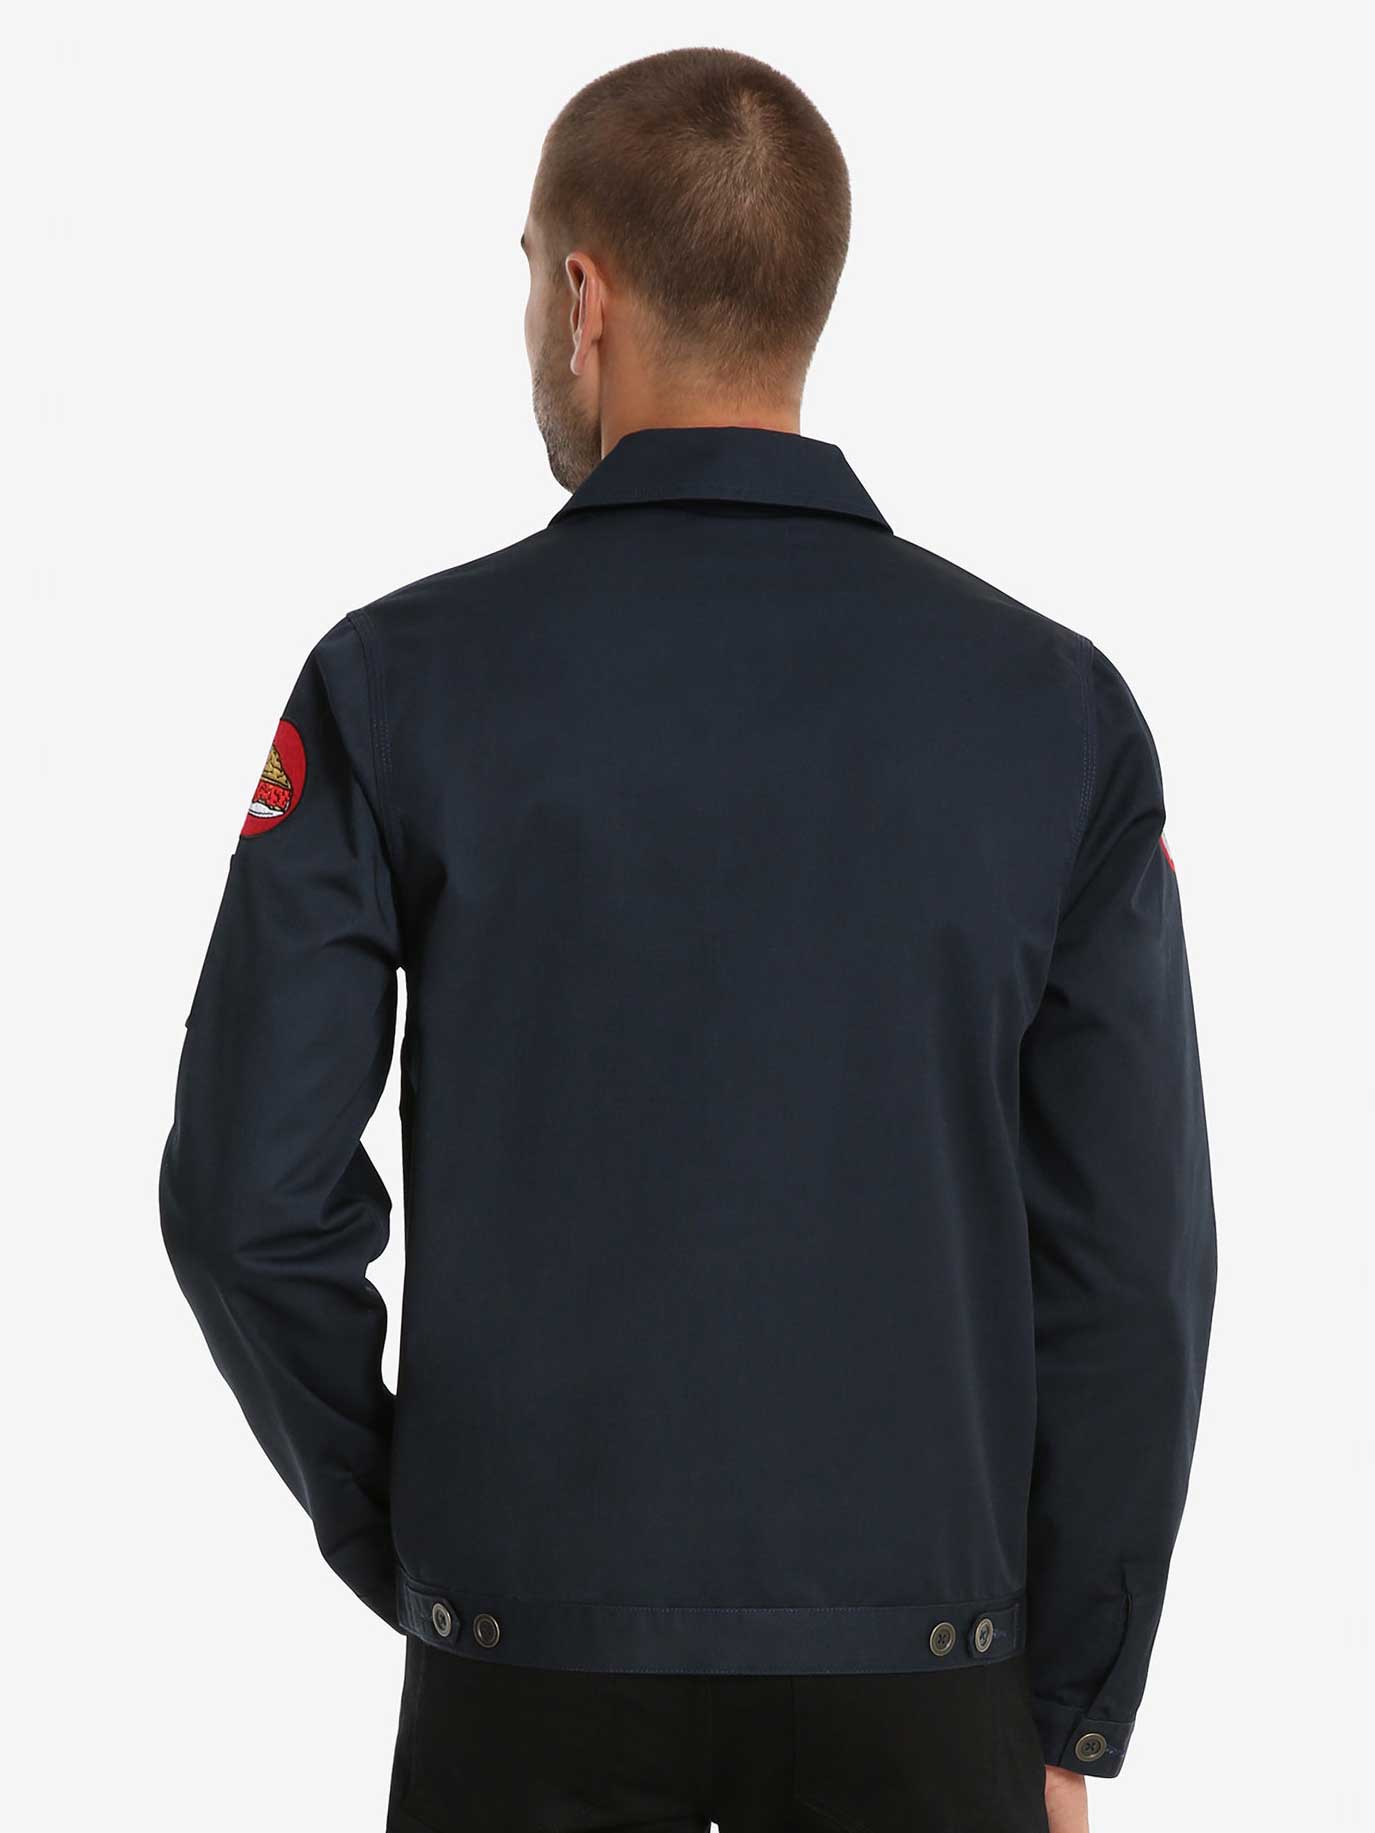 Twin Peaks Sheriff zipper jacket